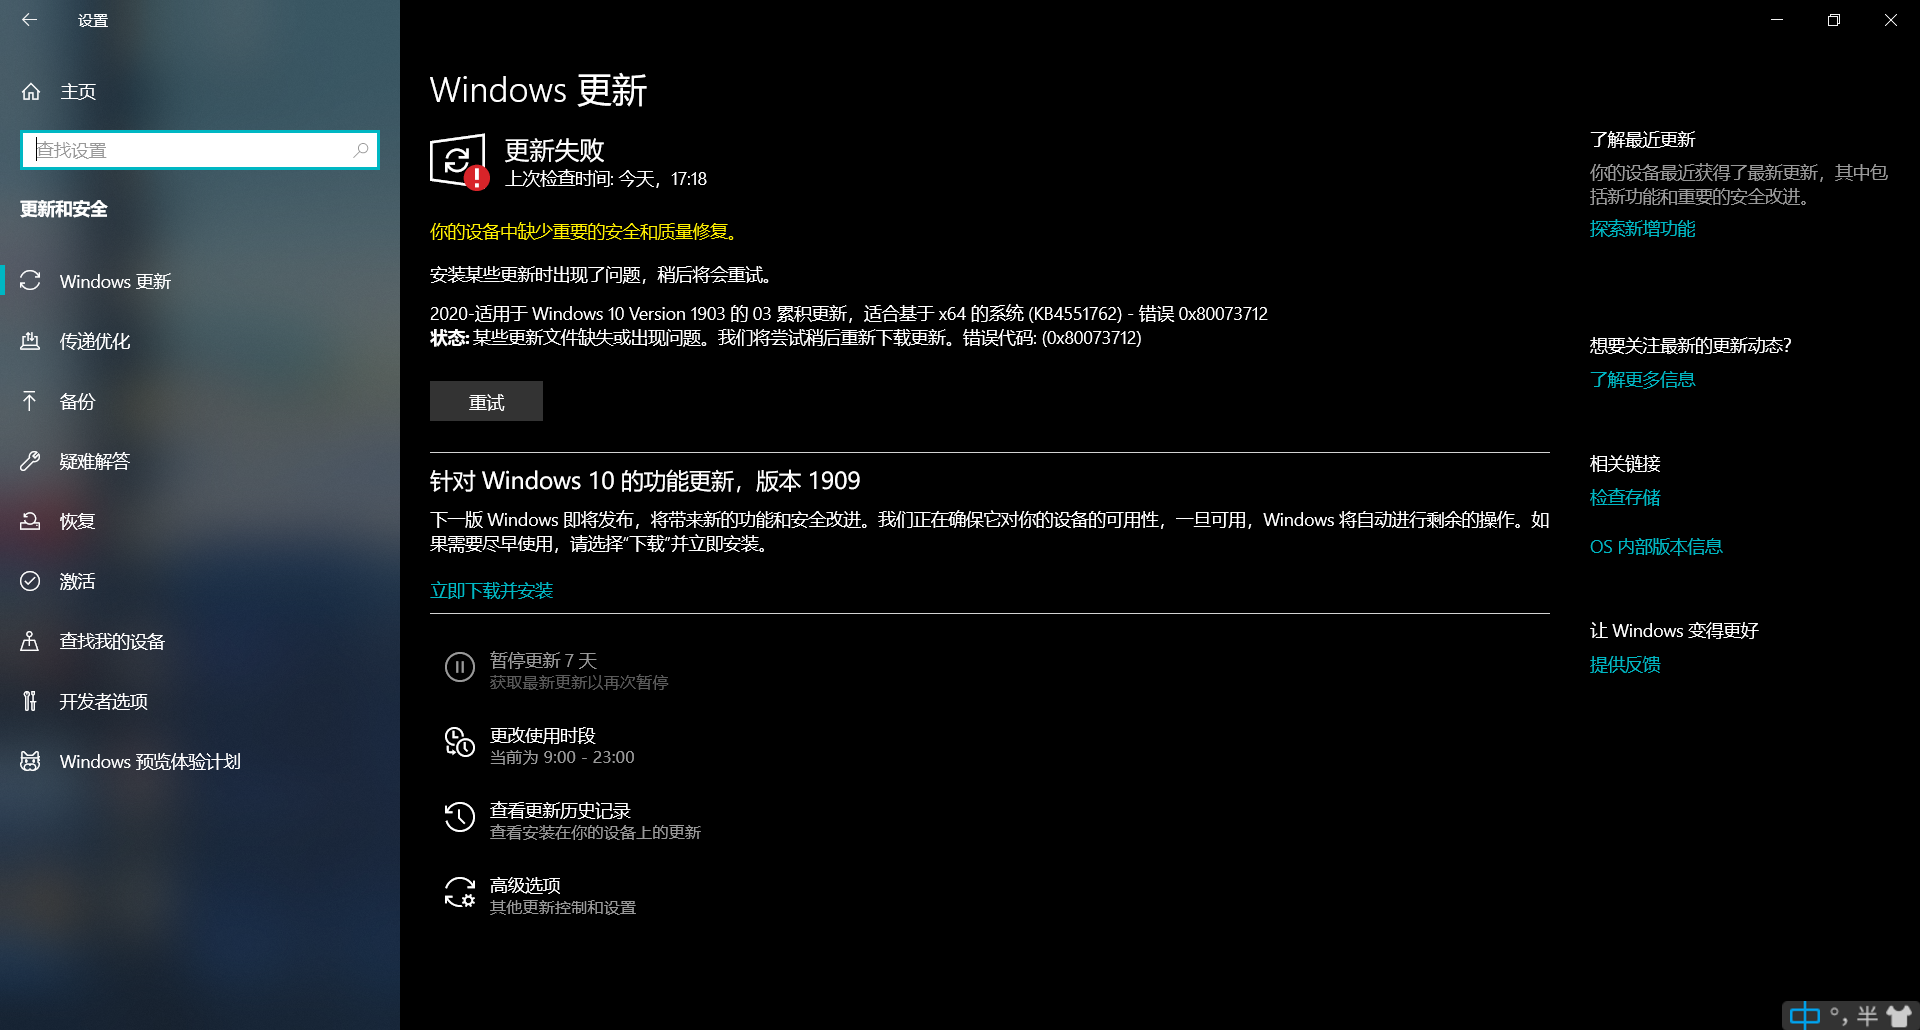 2020 适用于windows 10 Version 1903 的03 累积更新 适合基于x64 的系统 Microsoft Community